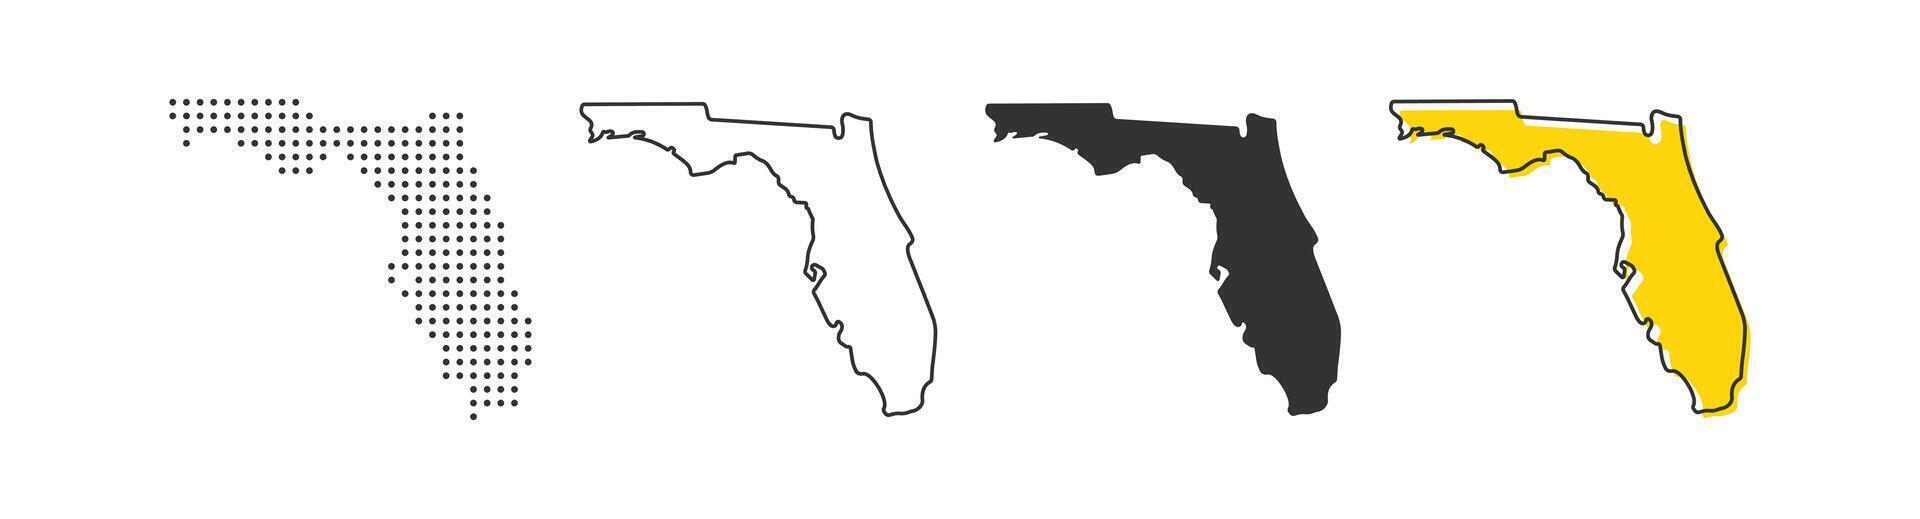 Florida stato carta geografica di Stati Uniti d'America nazione. geografia confine di americano cittadina. vettore illustrazione.